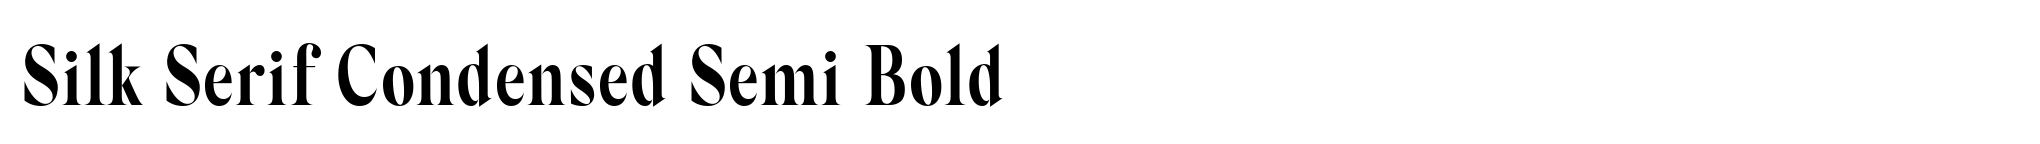 Silk Serif Condensed Semi Bold image